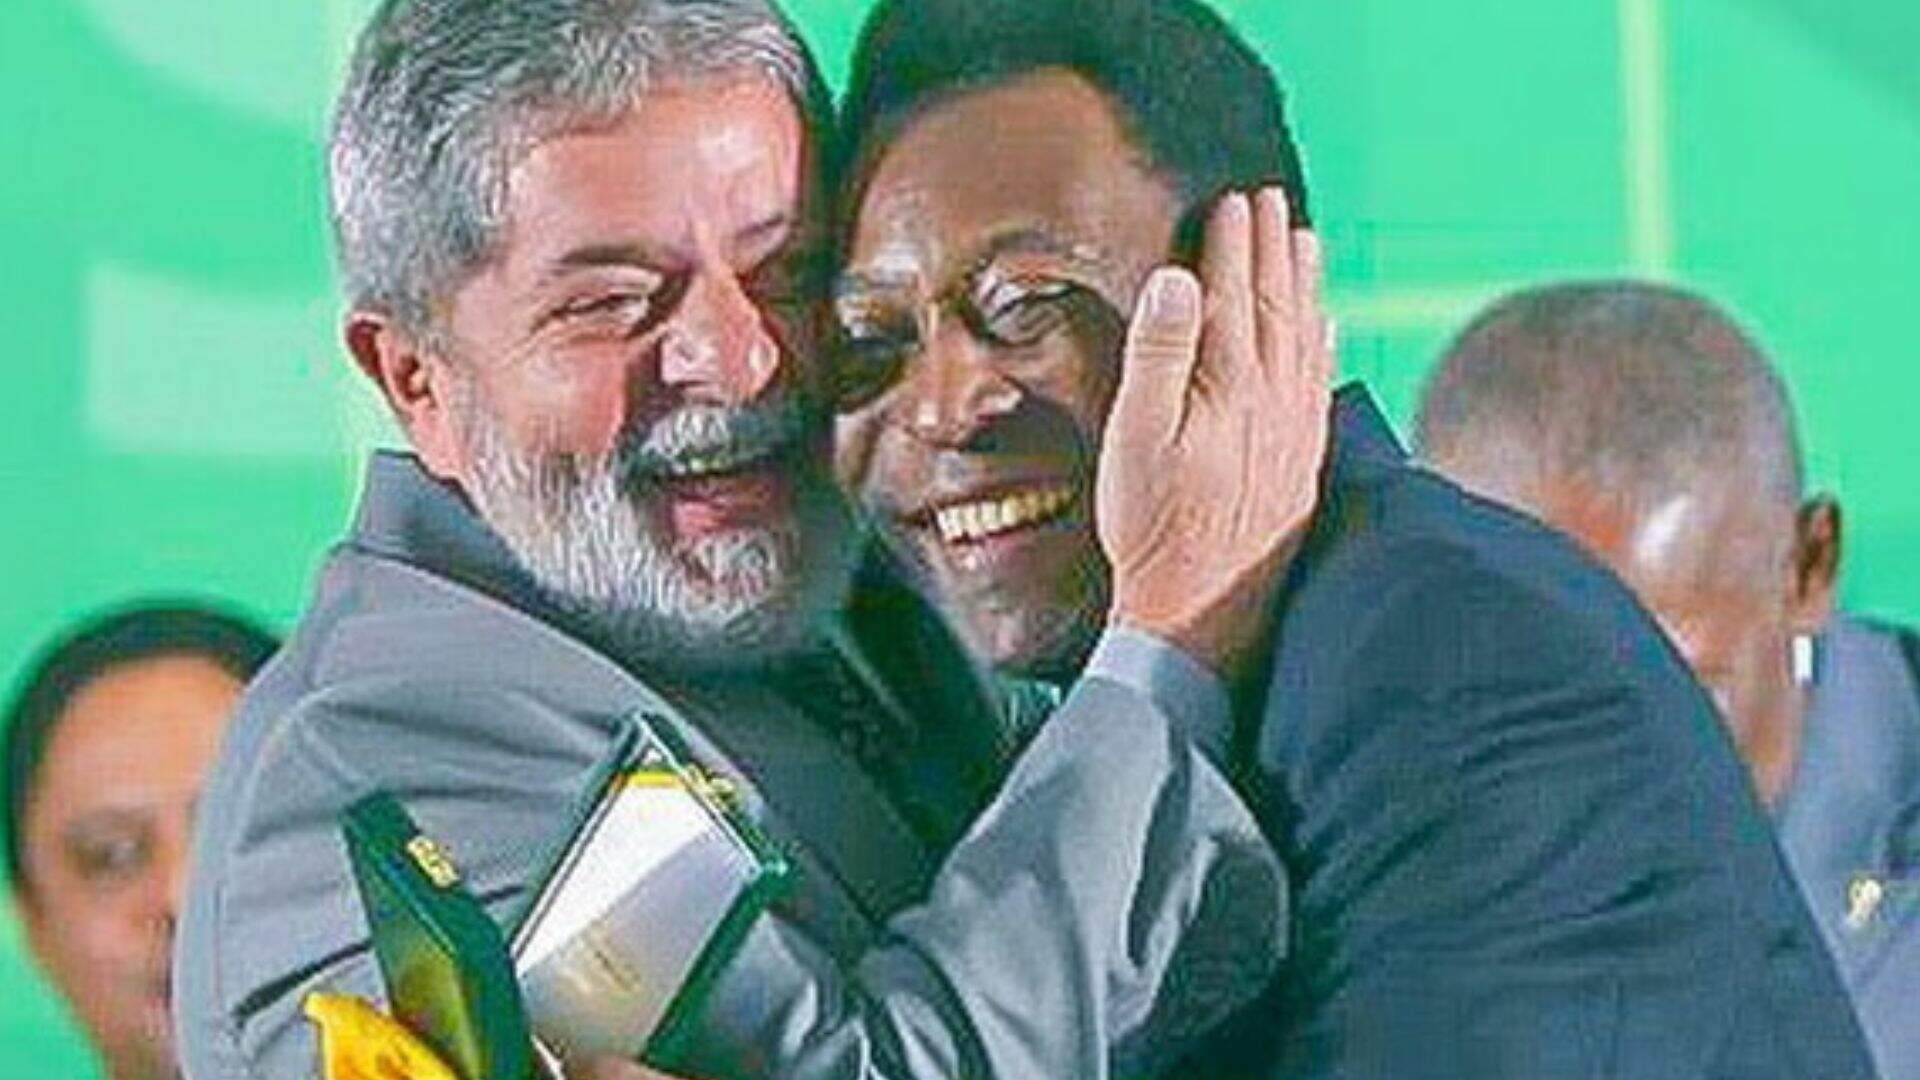 Família mantém desejo de Pelé ser enterrado apenas após posse de Lula à presidência - Metropolitana FM